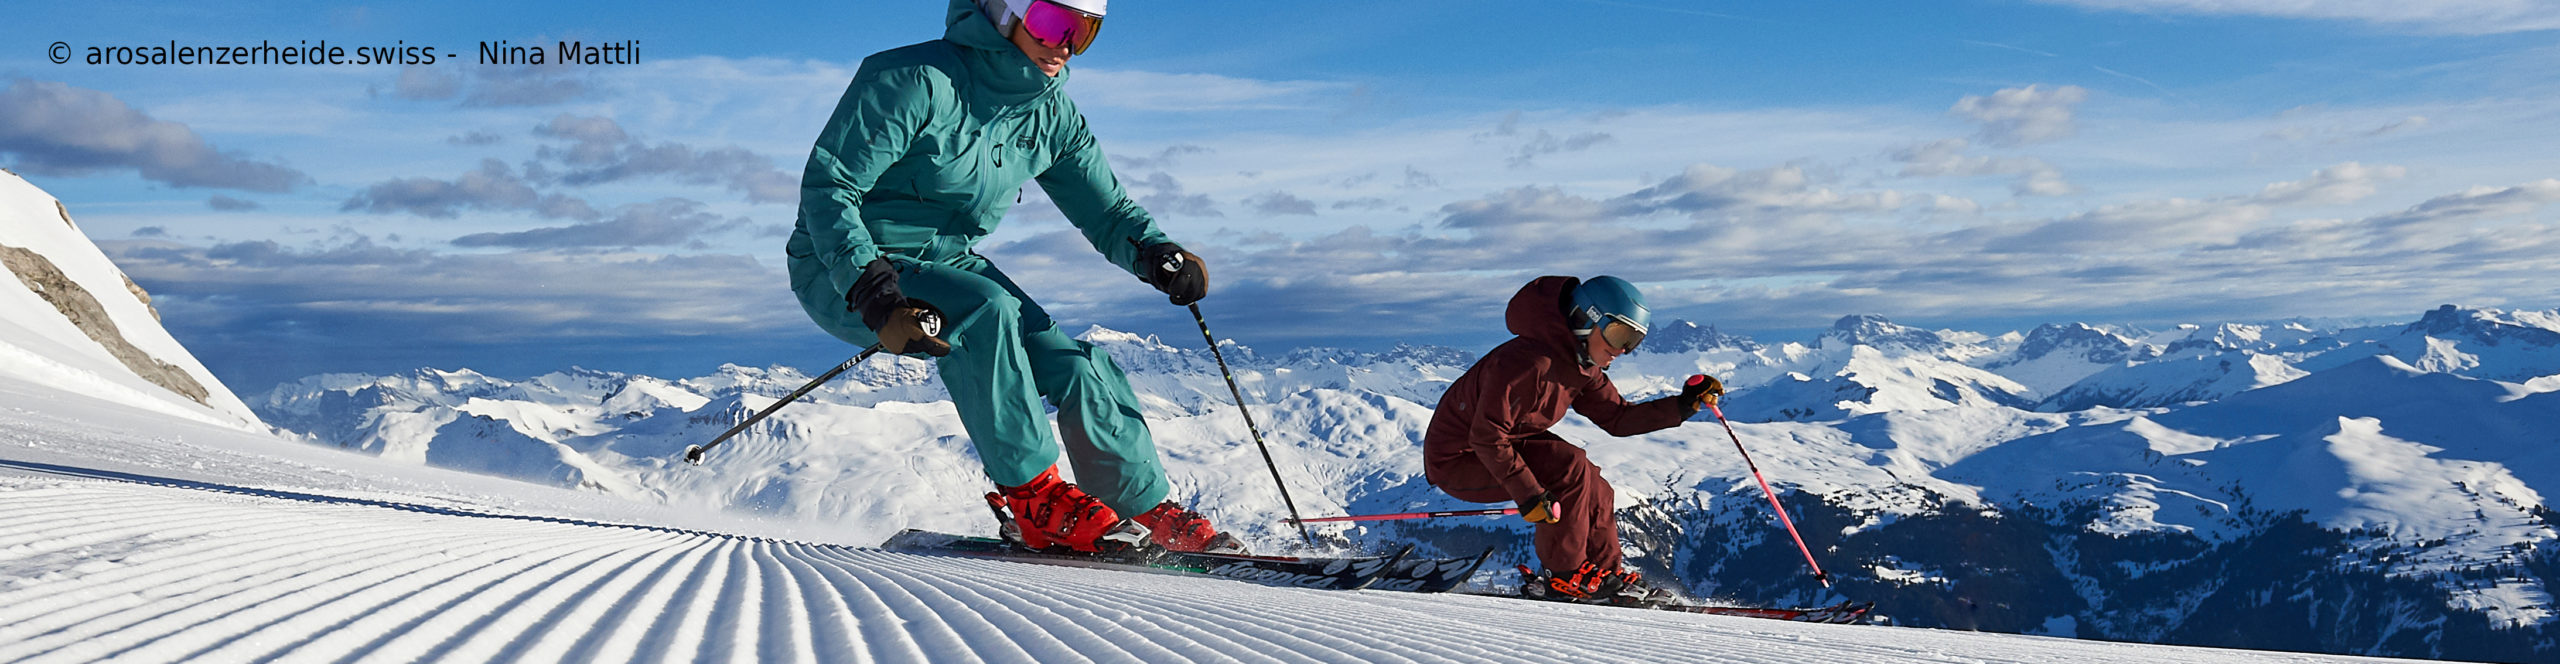 AROSA – LENZERHEIDE – SCHWEIZ – Weltcuport zum Sparpreis über Ostern – 4 Skitage inkl. Skipass 